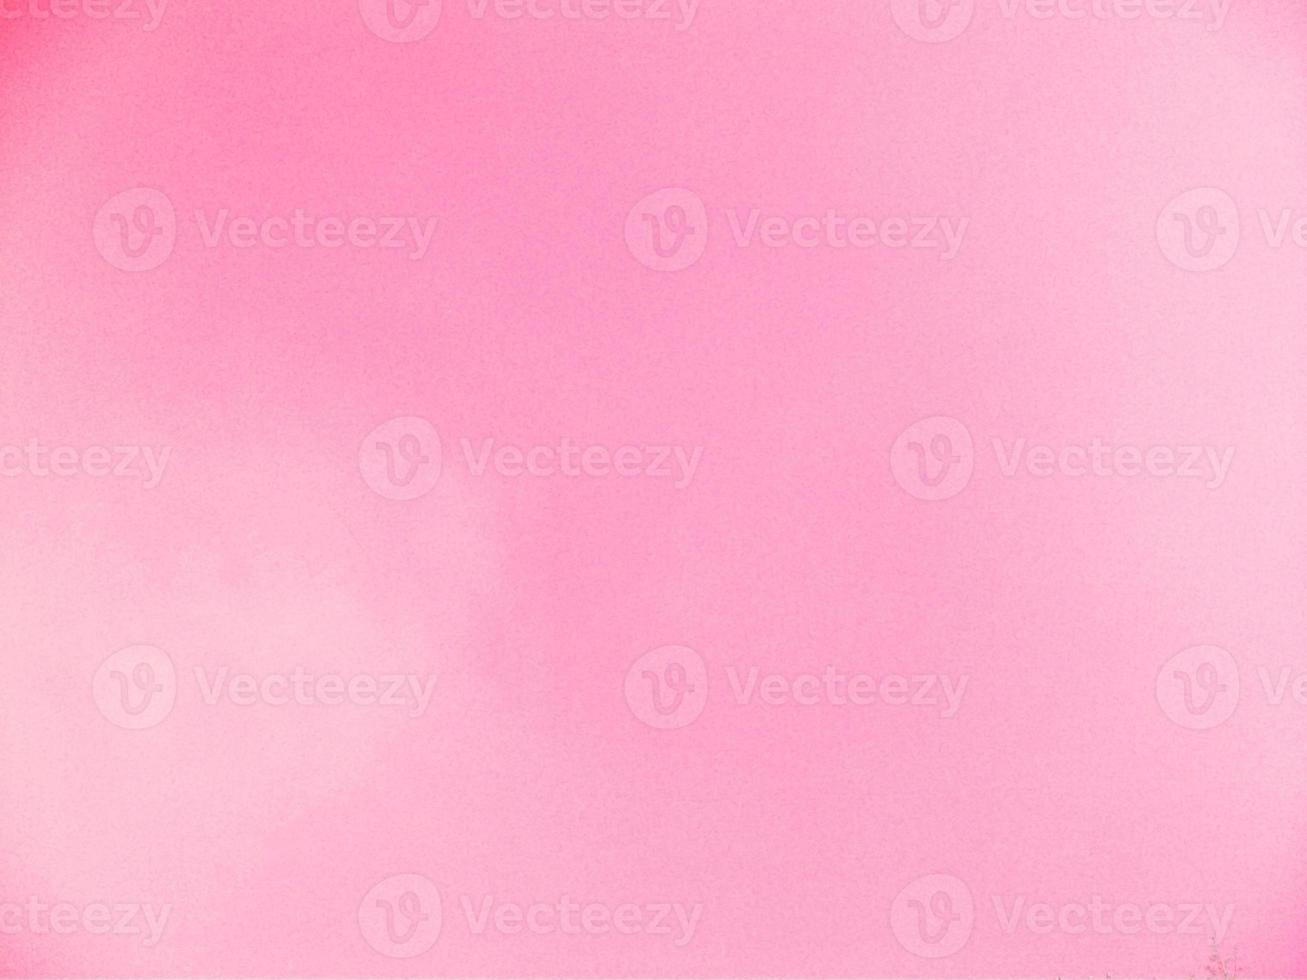 arrière-plan pastel rose tendre, mariage, anniversaire, thème et concept de la Saint-Valentin photo